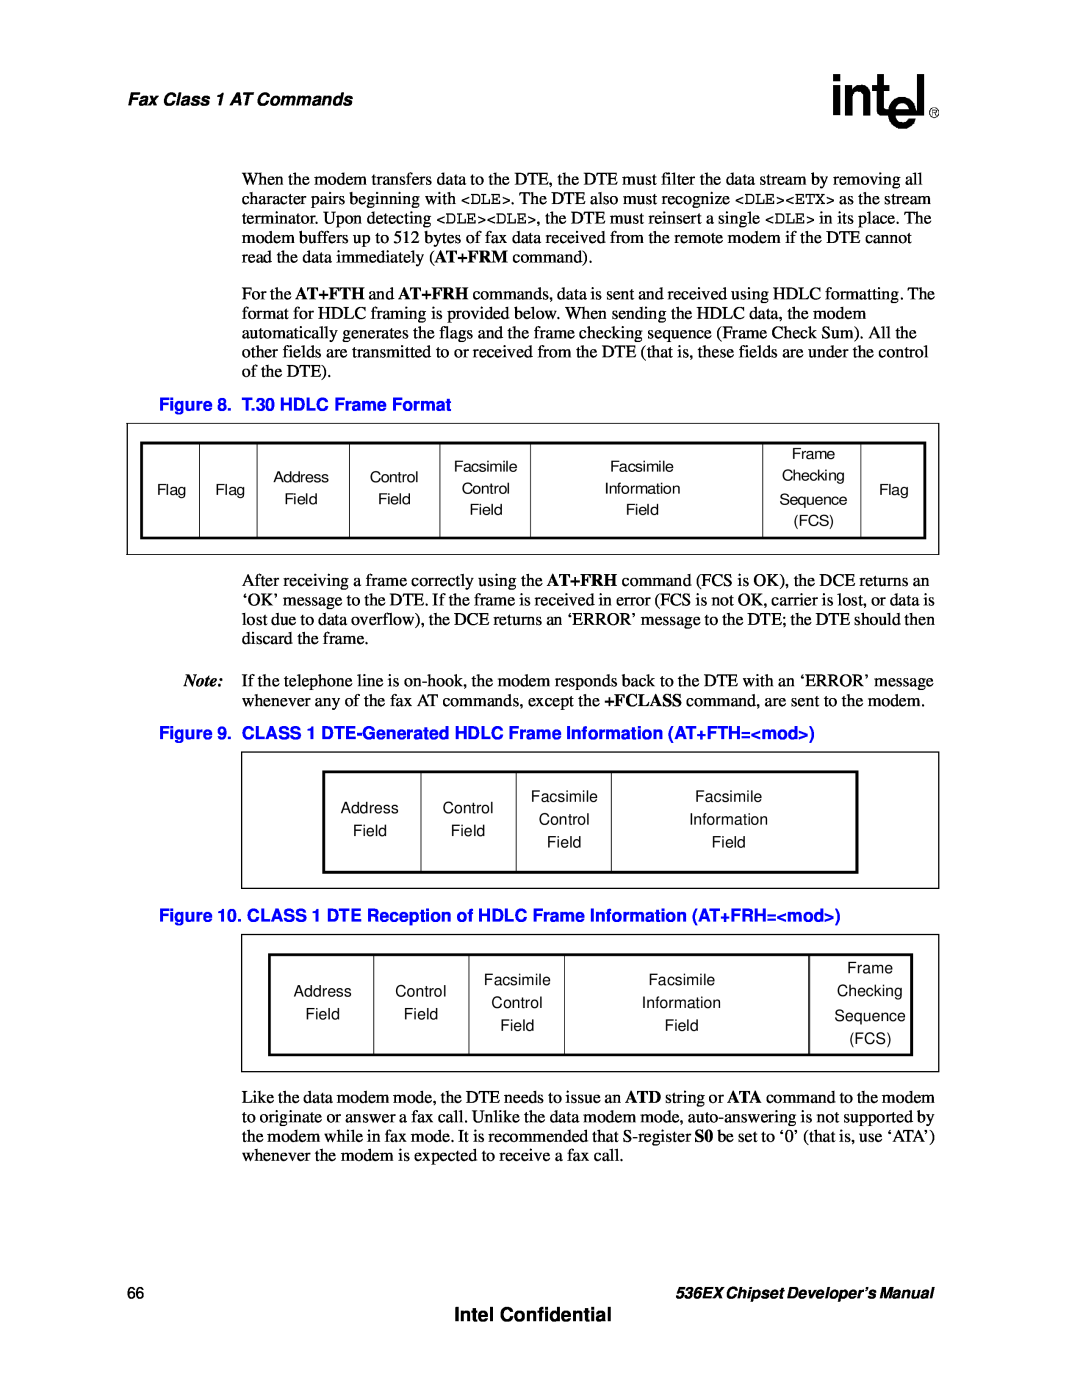 Intel 537EX manual Intel Confidential, Fax Class 1 AT Commands, T.30 HDLC Frame Format 